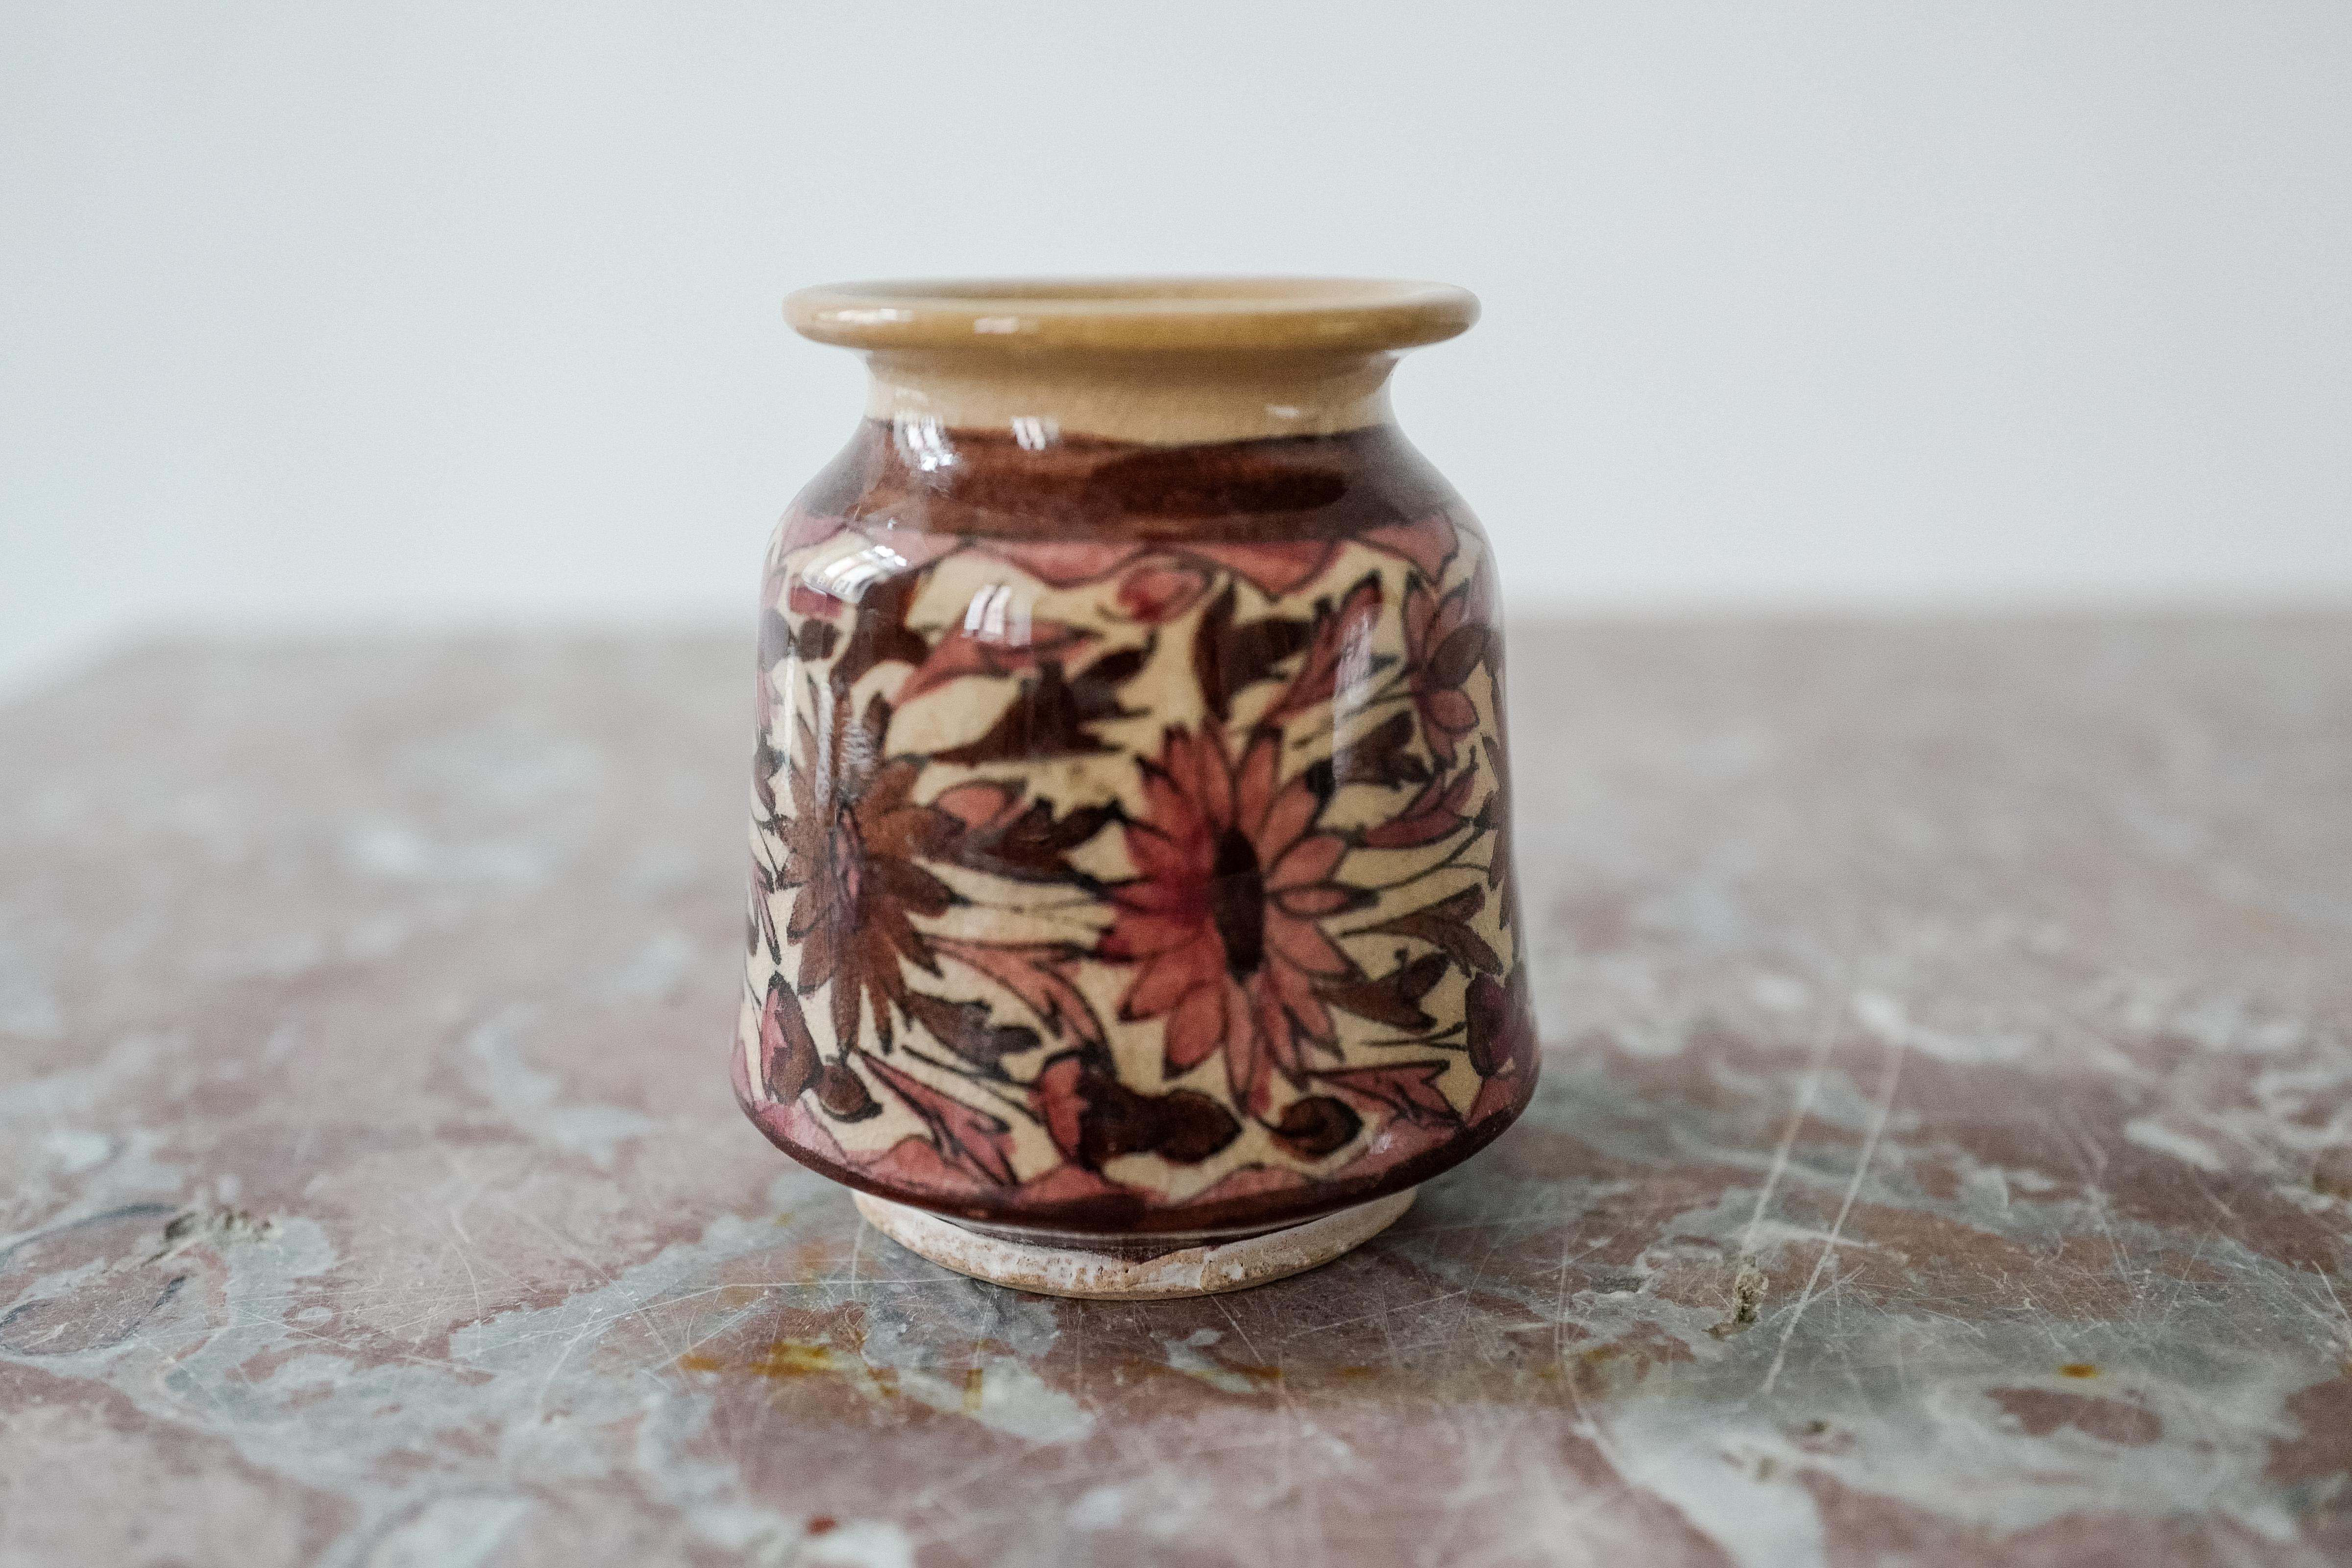 Vase floral rose en céramique sicilienne. Nouvellement fabriquée dans une technique de craquelure antique. Peint à la main. Exemplaire unique. 